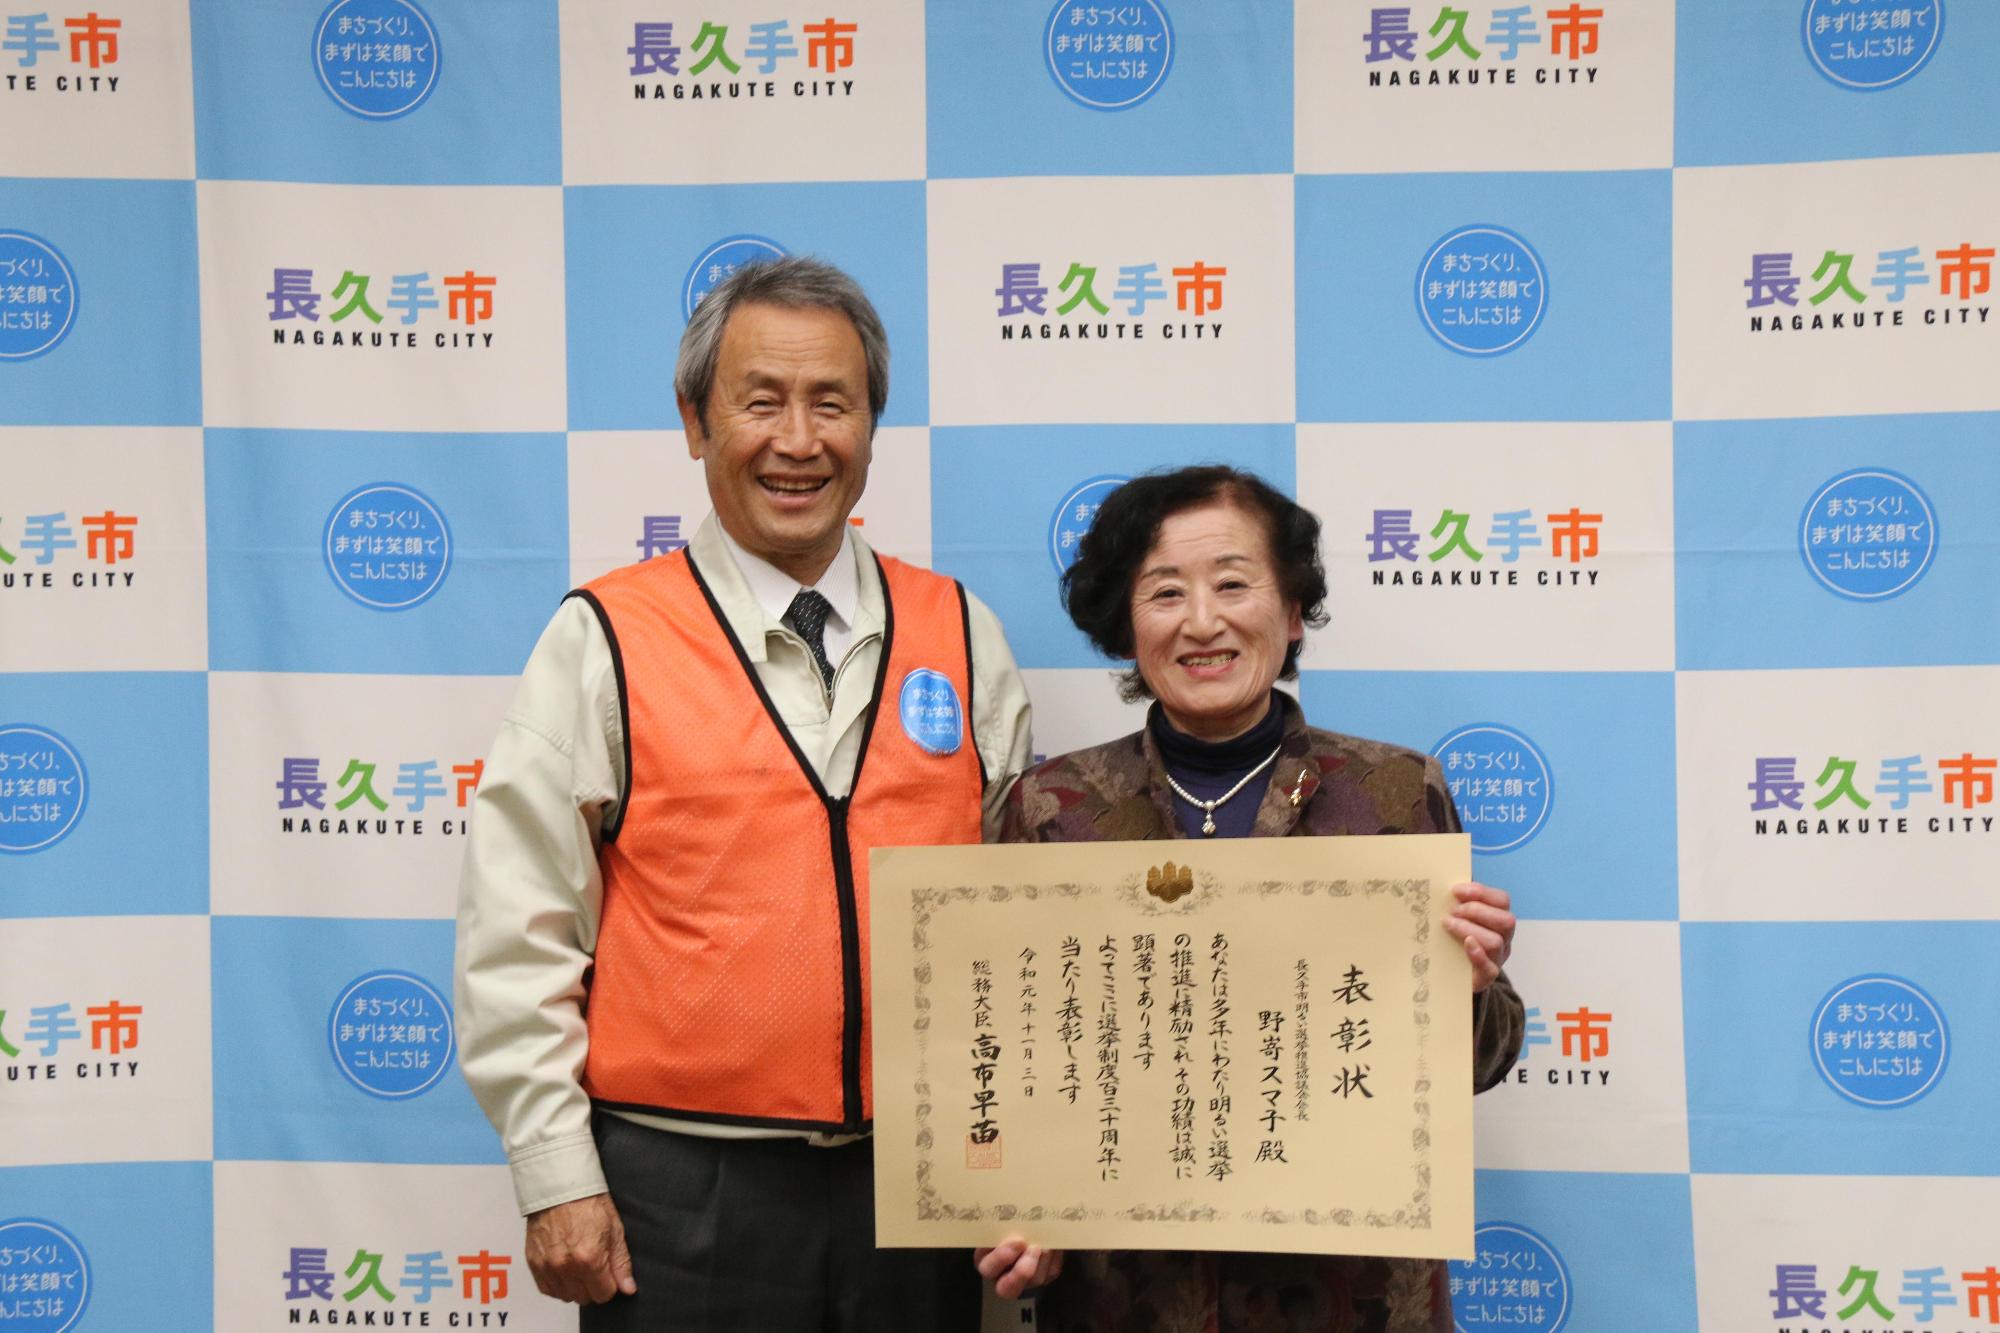 総務大臣表彰を受賞した野嵜スマ子さんが賞状を手に持って笑顔で市長と写っている写真